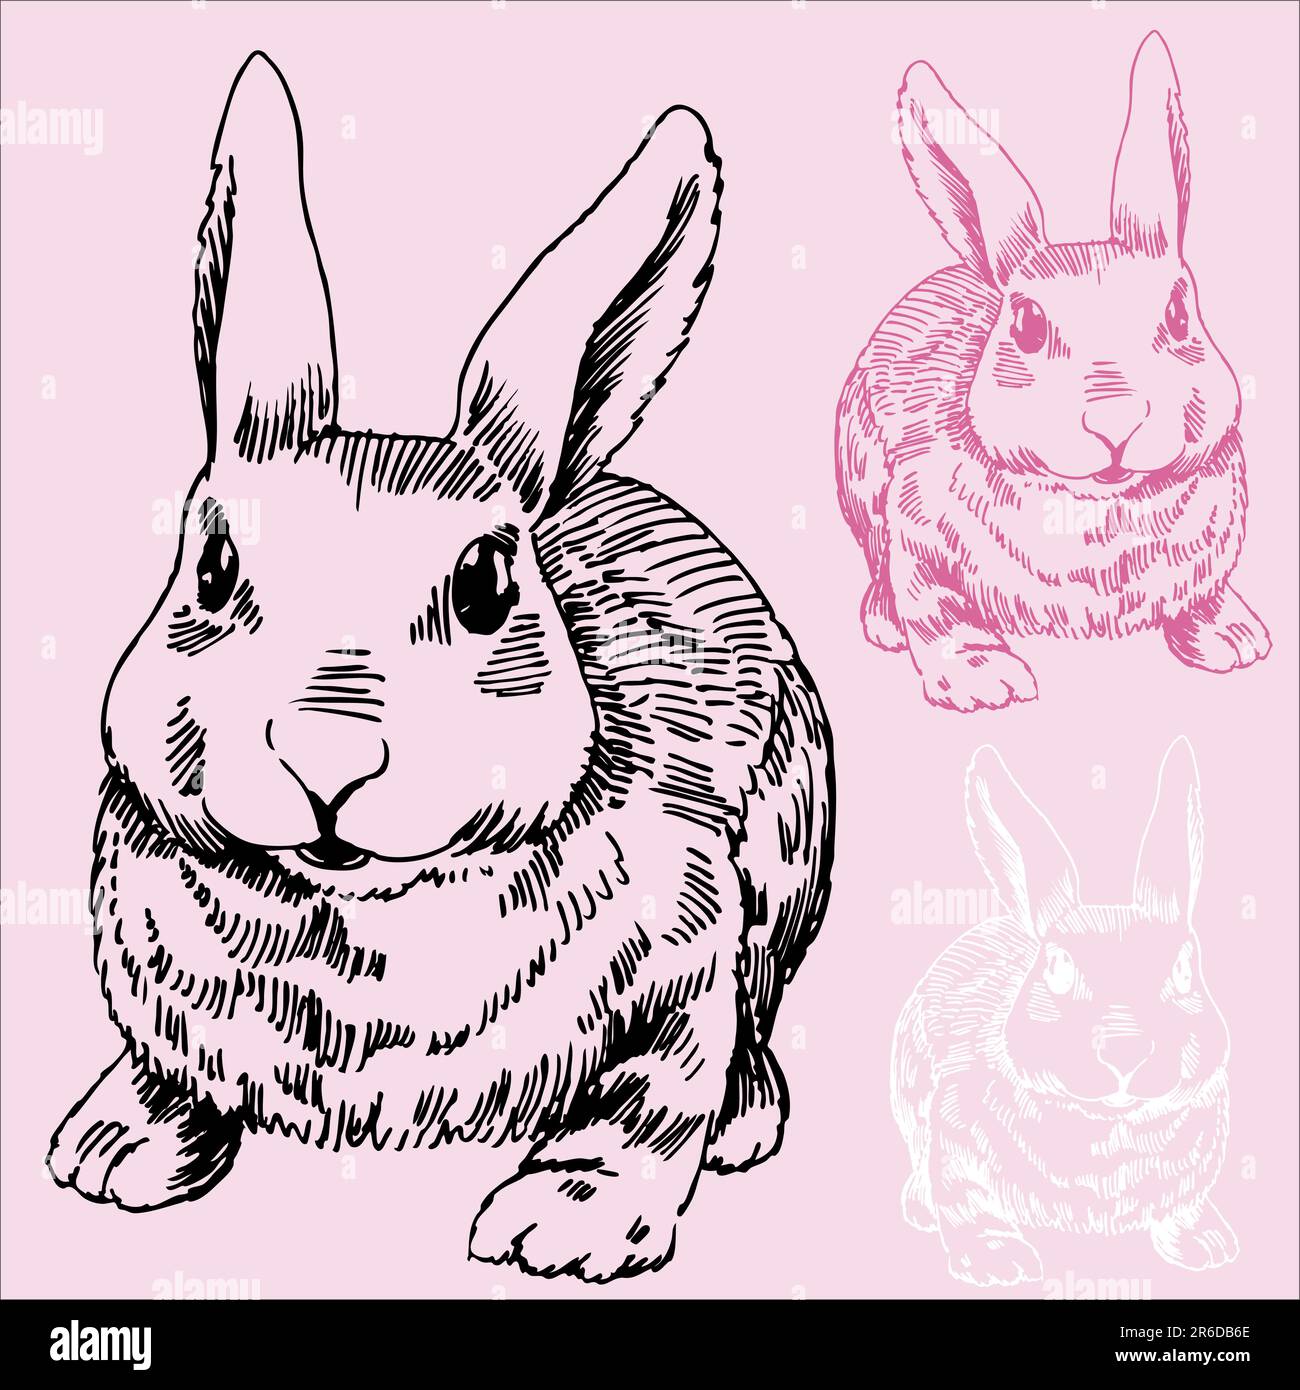 Disegno a mano di un coniglio/coniglio. Illustrazione Vettoriale